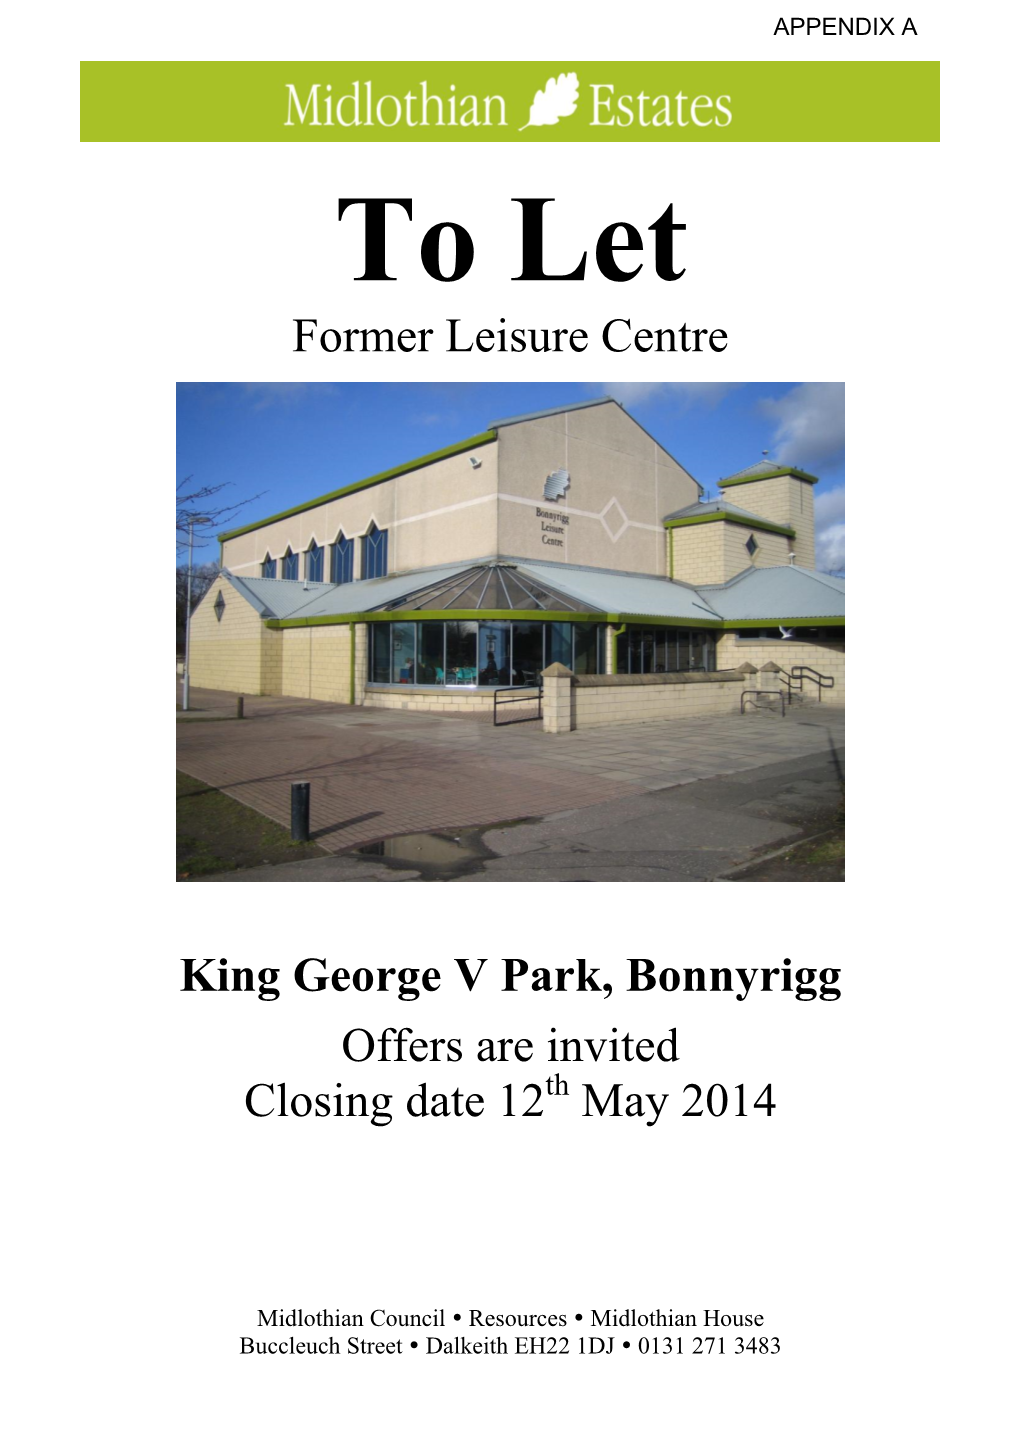 Former Leisure Centre King George V Park, Bonnyrigg Offers